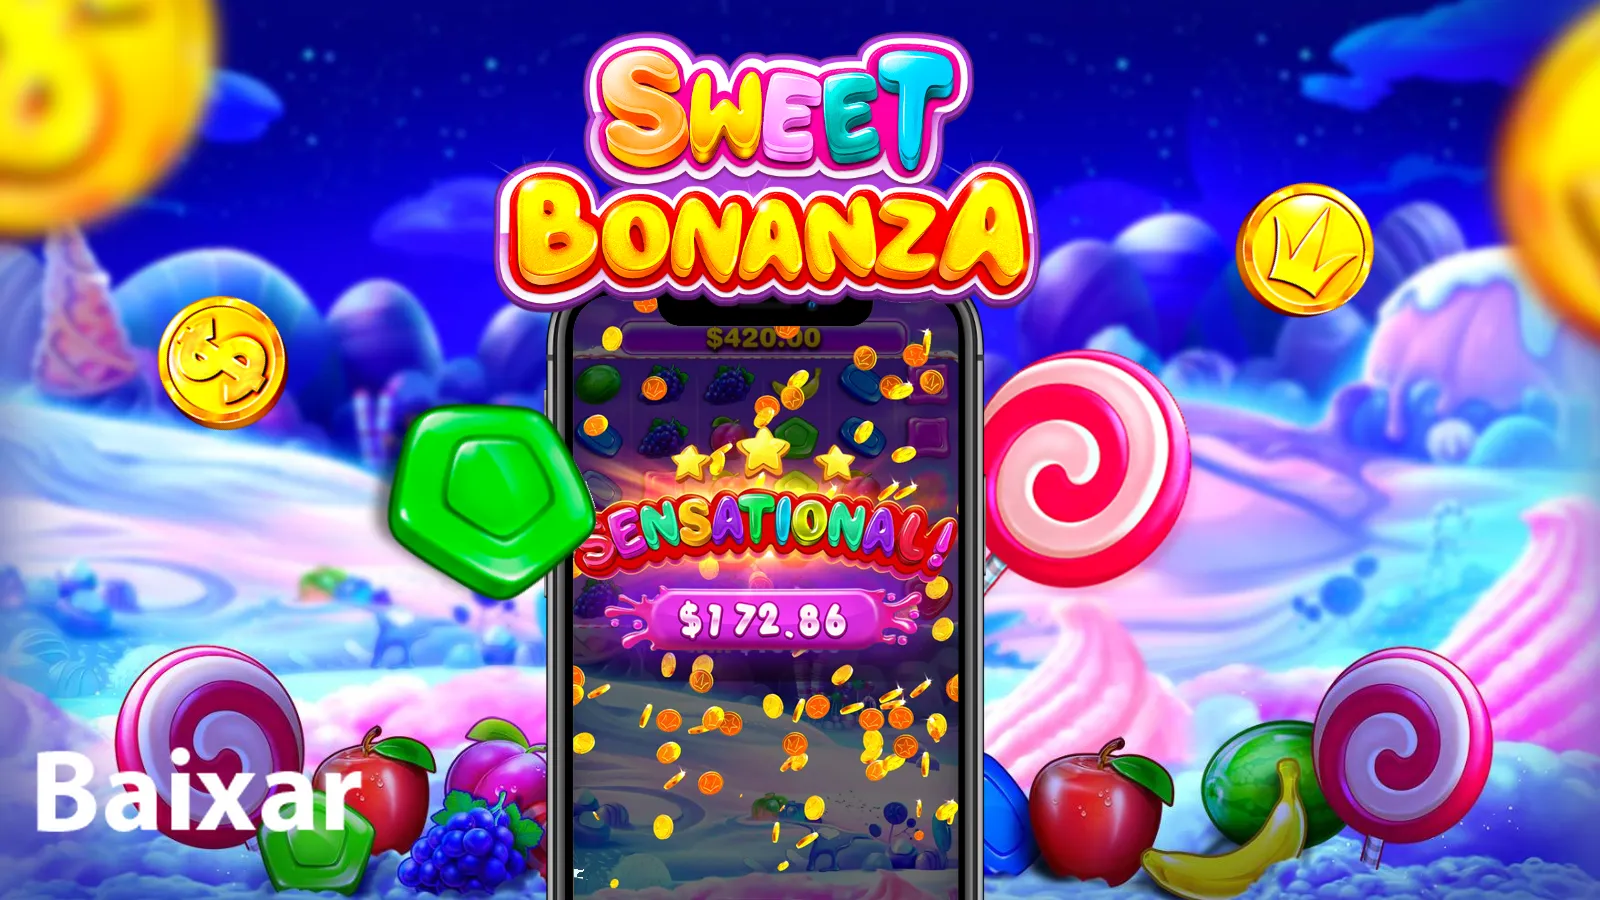 jogar sweet bonanza